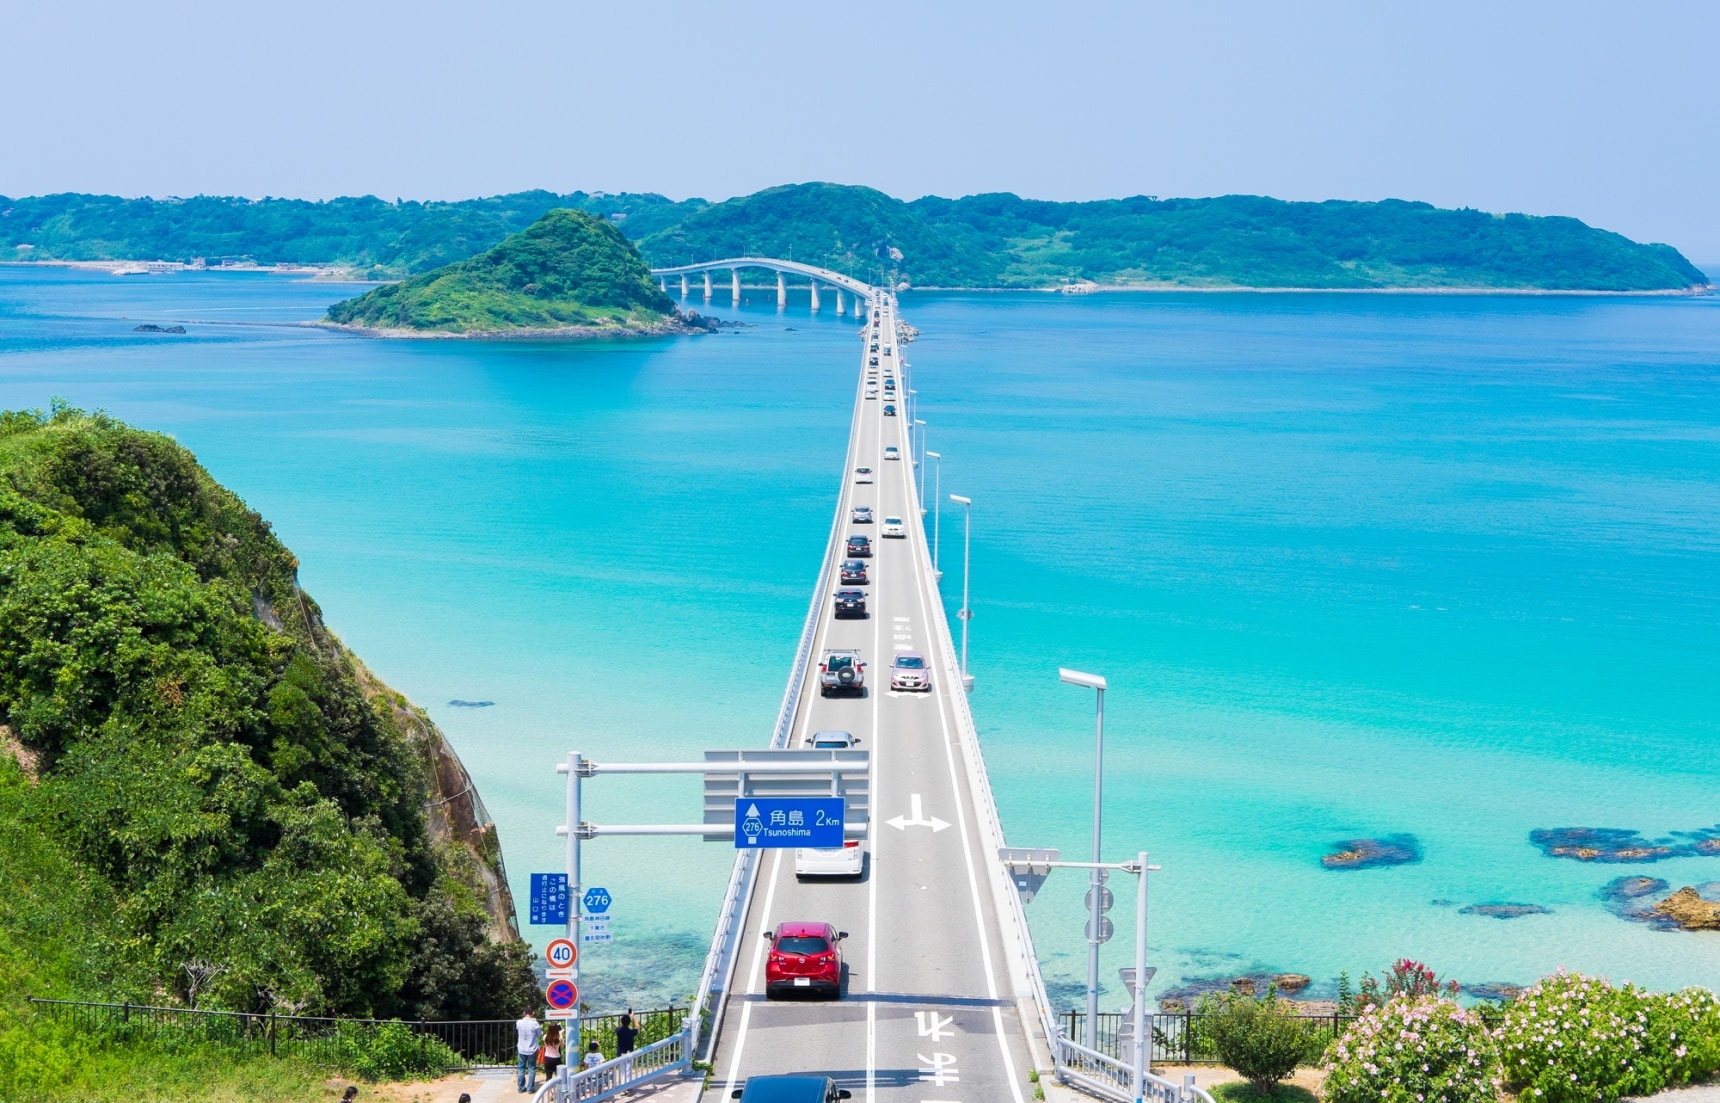 ขับรถข้ามทะเลที่สะพานสึโนะชิม่า